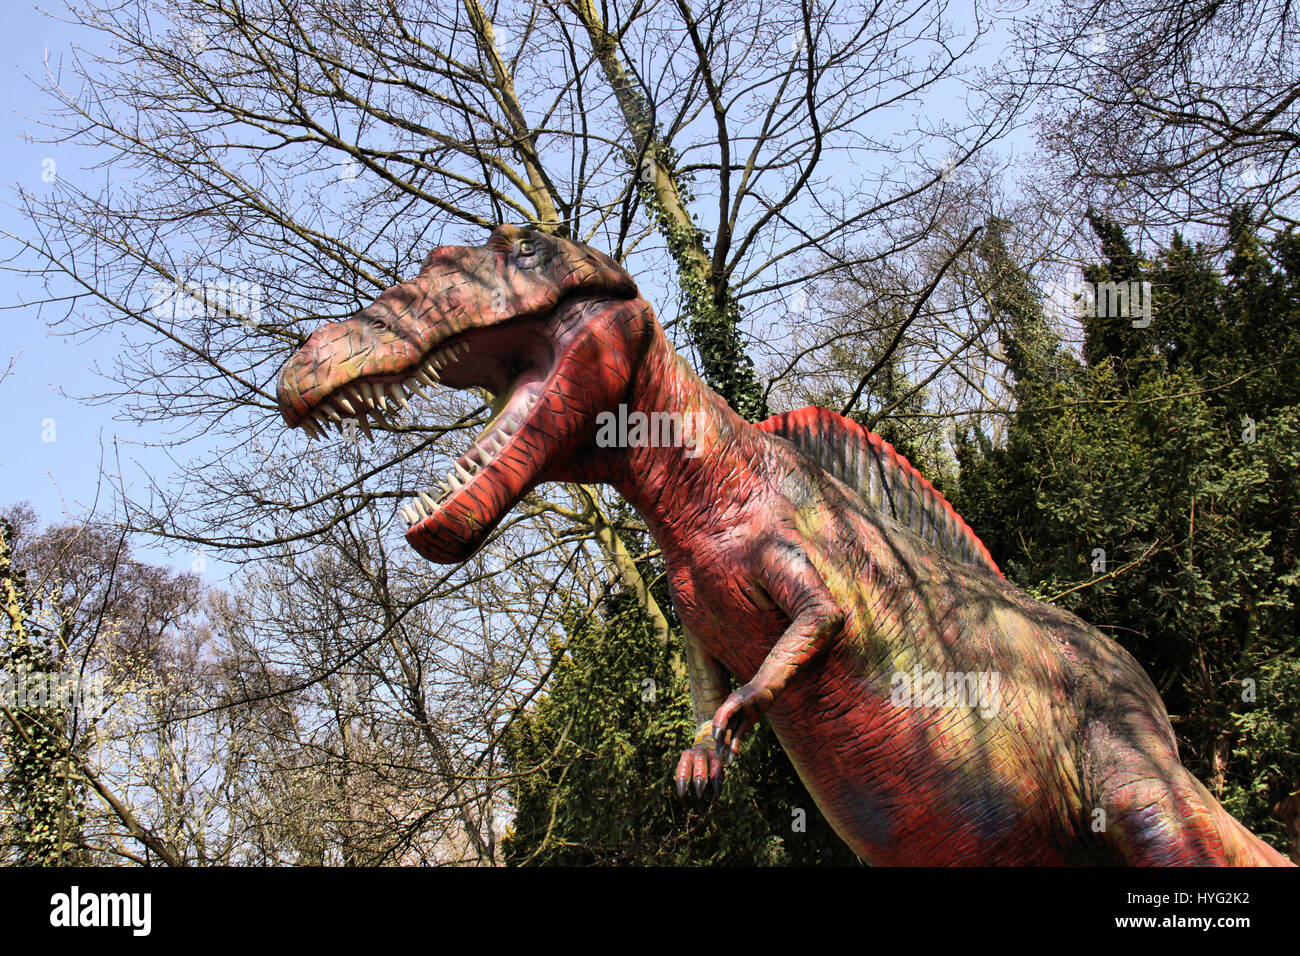 Eche un vistazo a la retro abandonado parque temático Reino Unido donde una  vez los dinosaurios caminaron sobre la tierra. Aunque no es un Parque  Jurásico, creepy fotografías muestran modelos y Estatuas